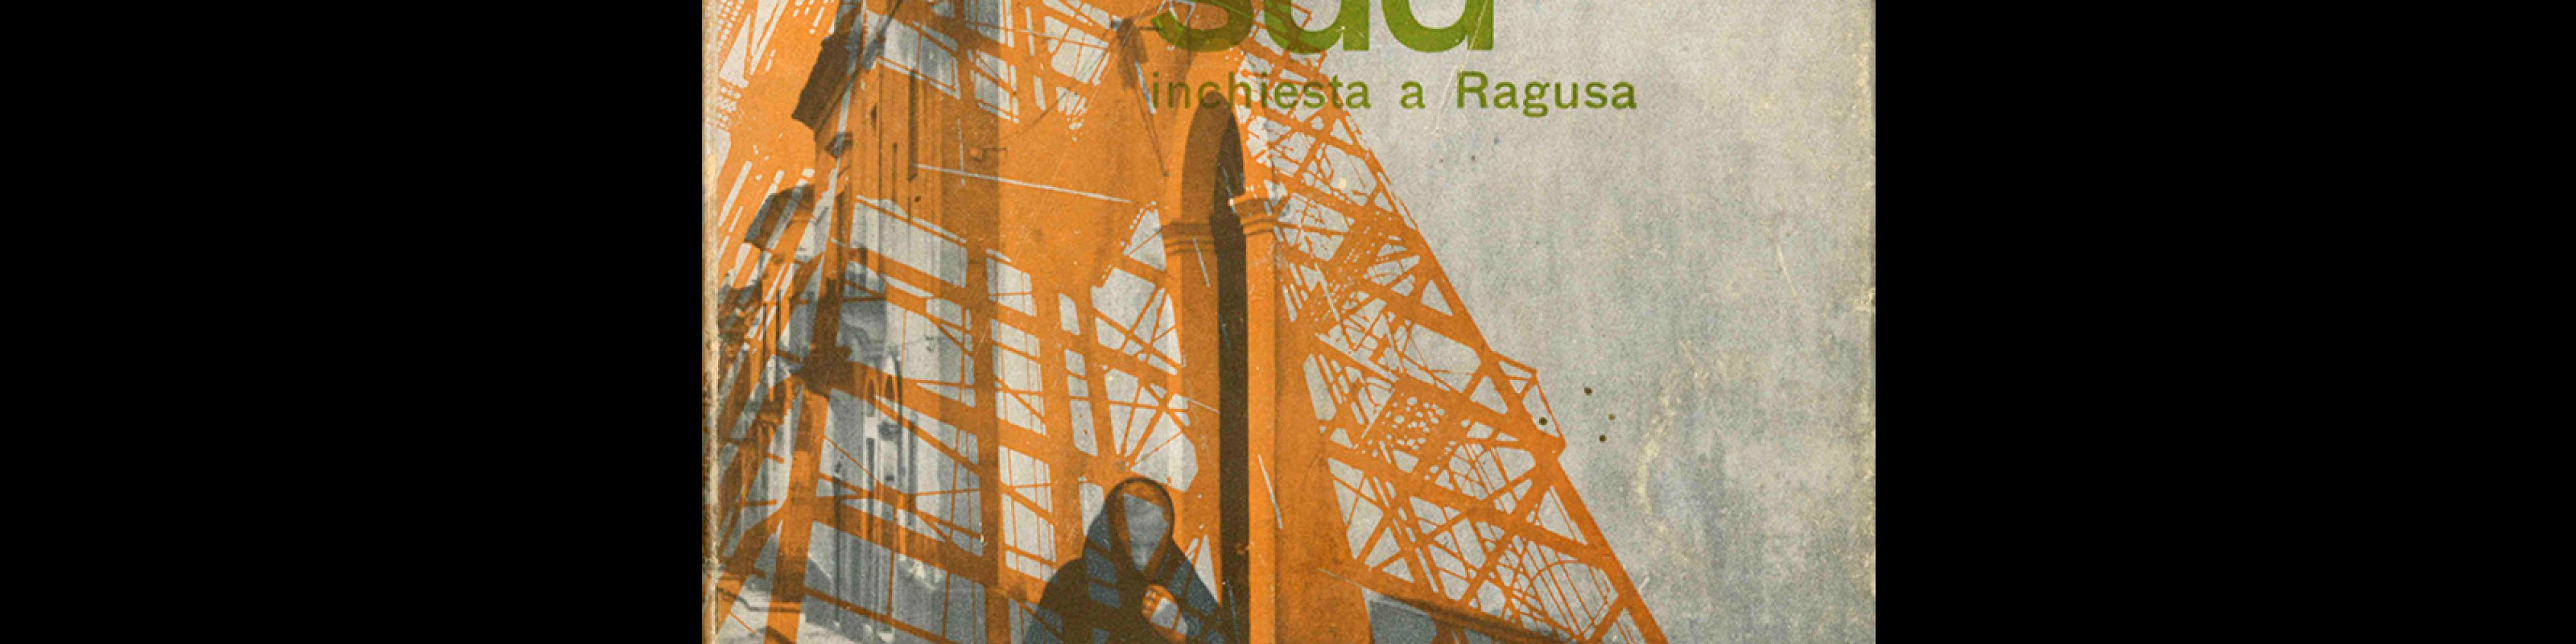 Gabriele Morello - Petrolio e Sud. Milano, Etas Editrice, 1959. Cover design by Max Huber